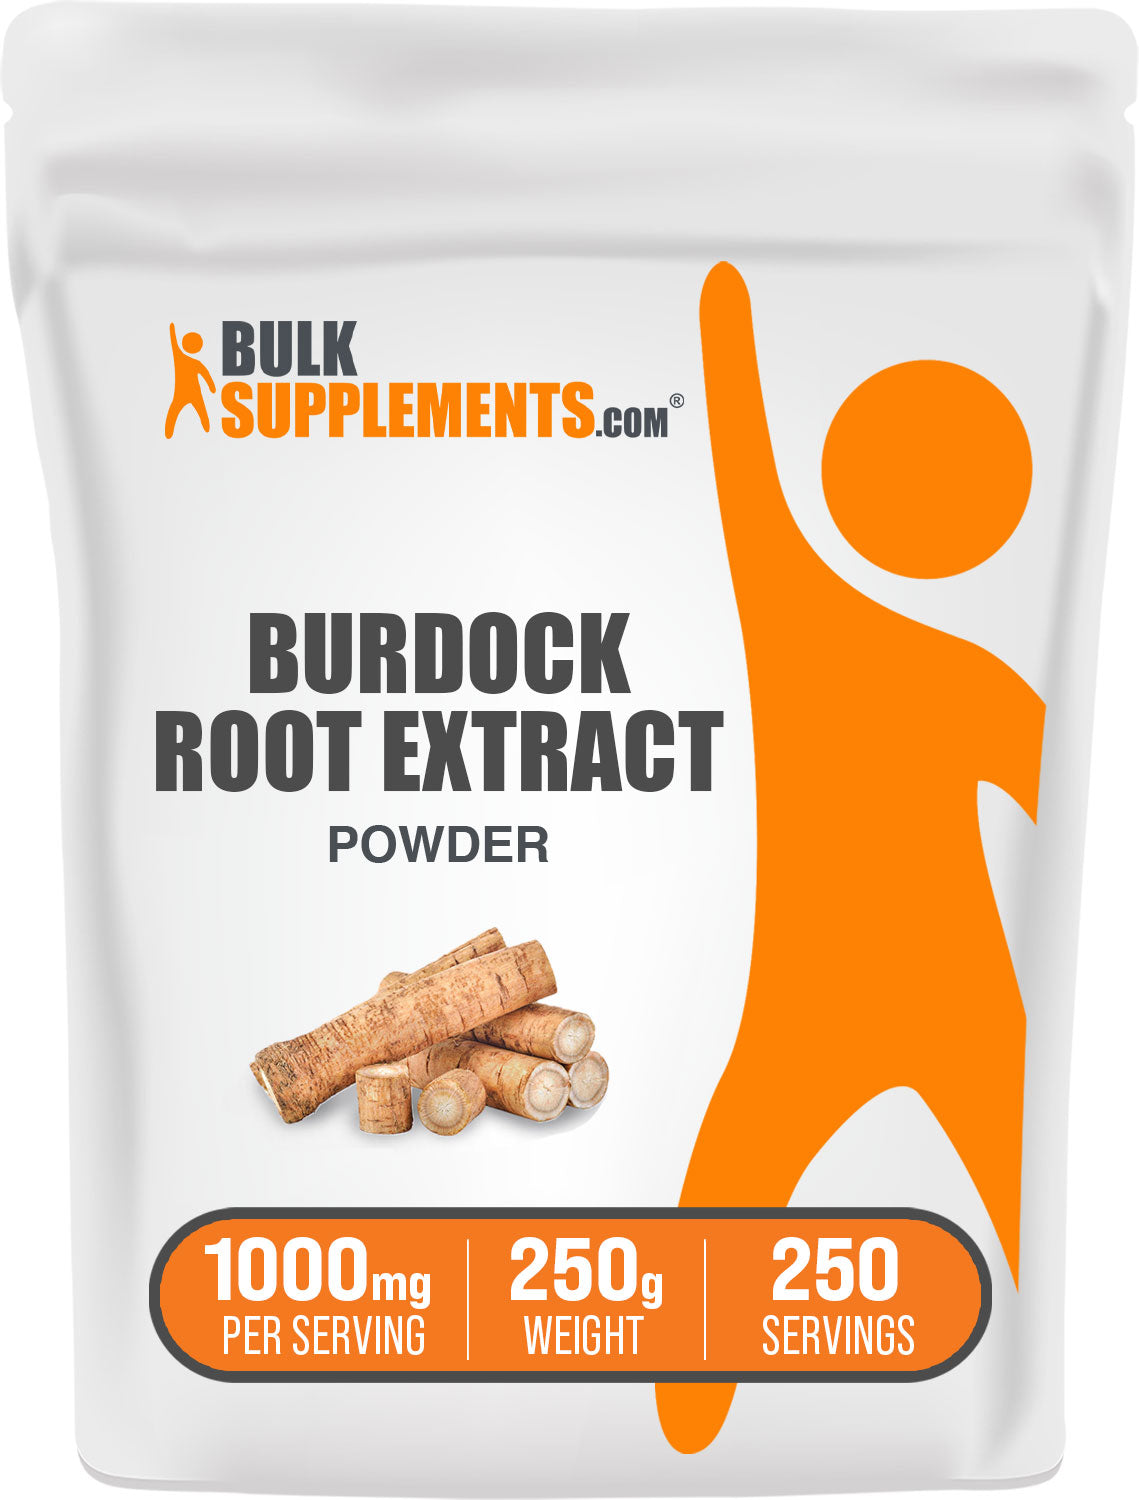 250g of burdock root